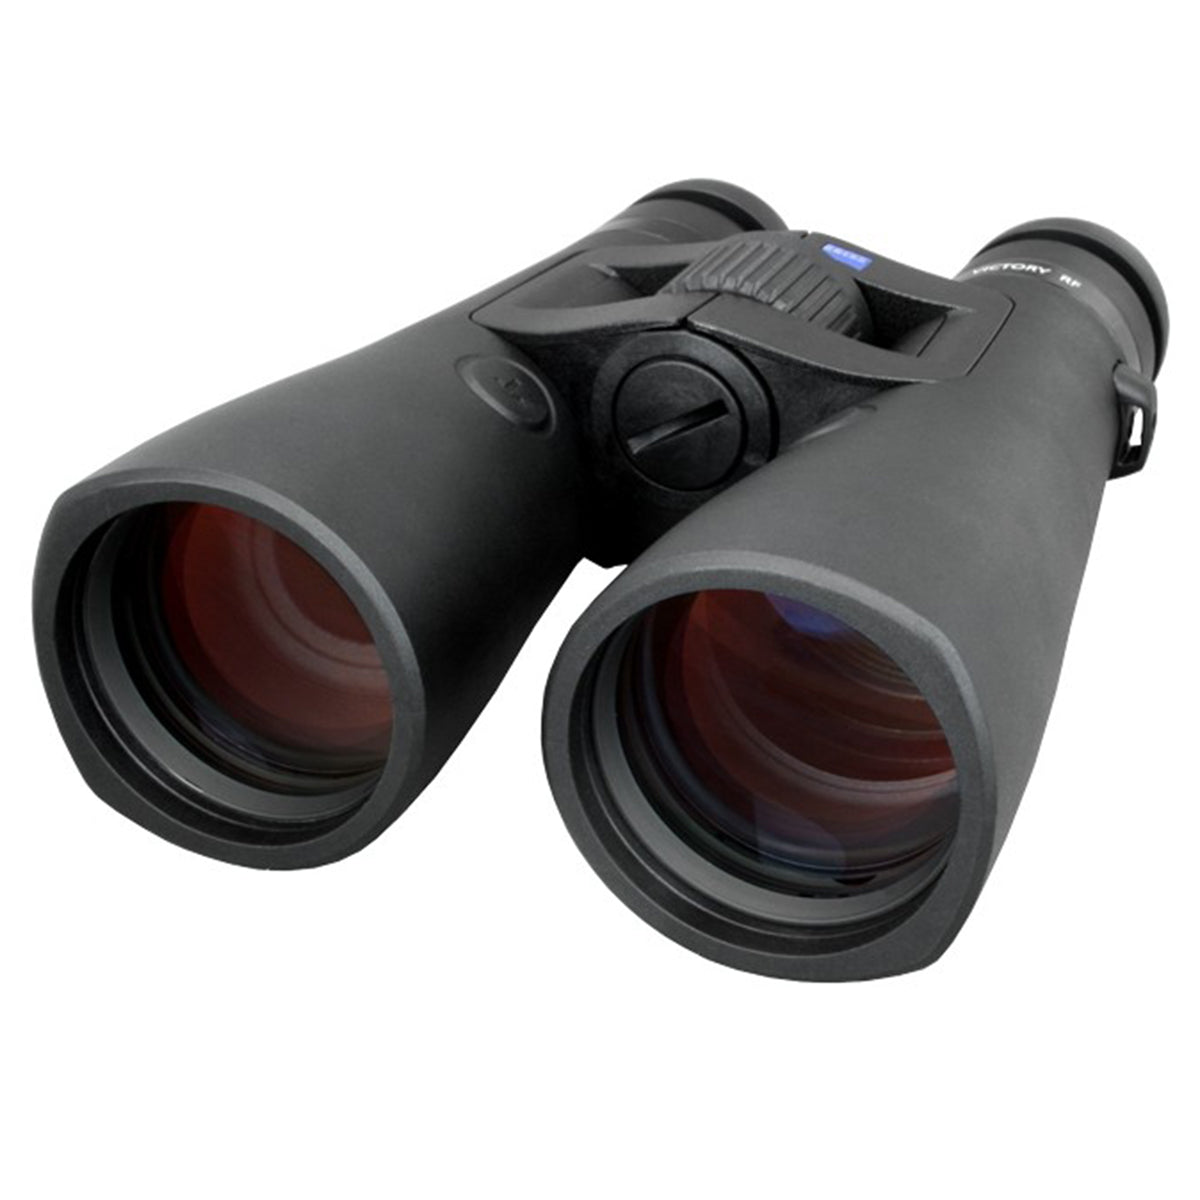 Zeiss 10x54 Victory Rangefinding Binocular by Zeiss | Optics - goHUNT Shop